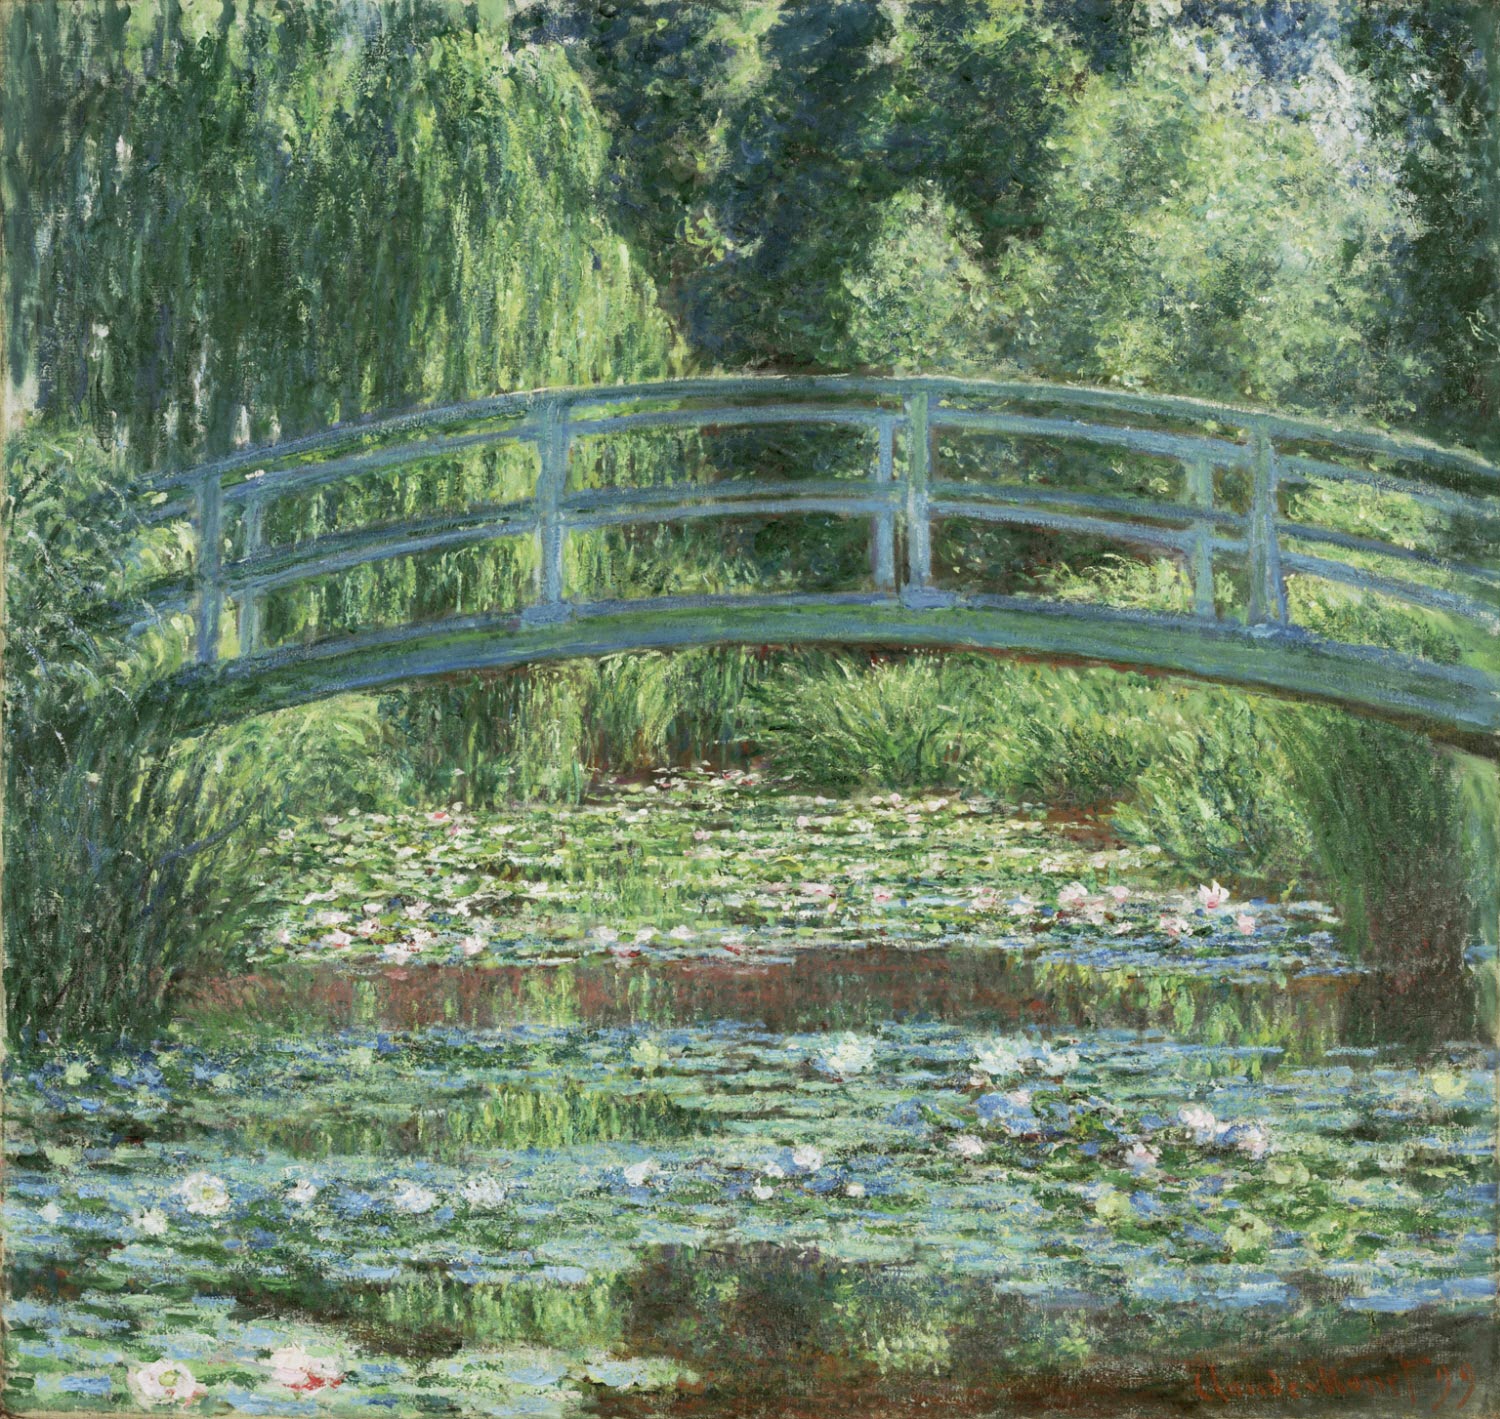 睡蓮 の 池 と 日本 の 橋